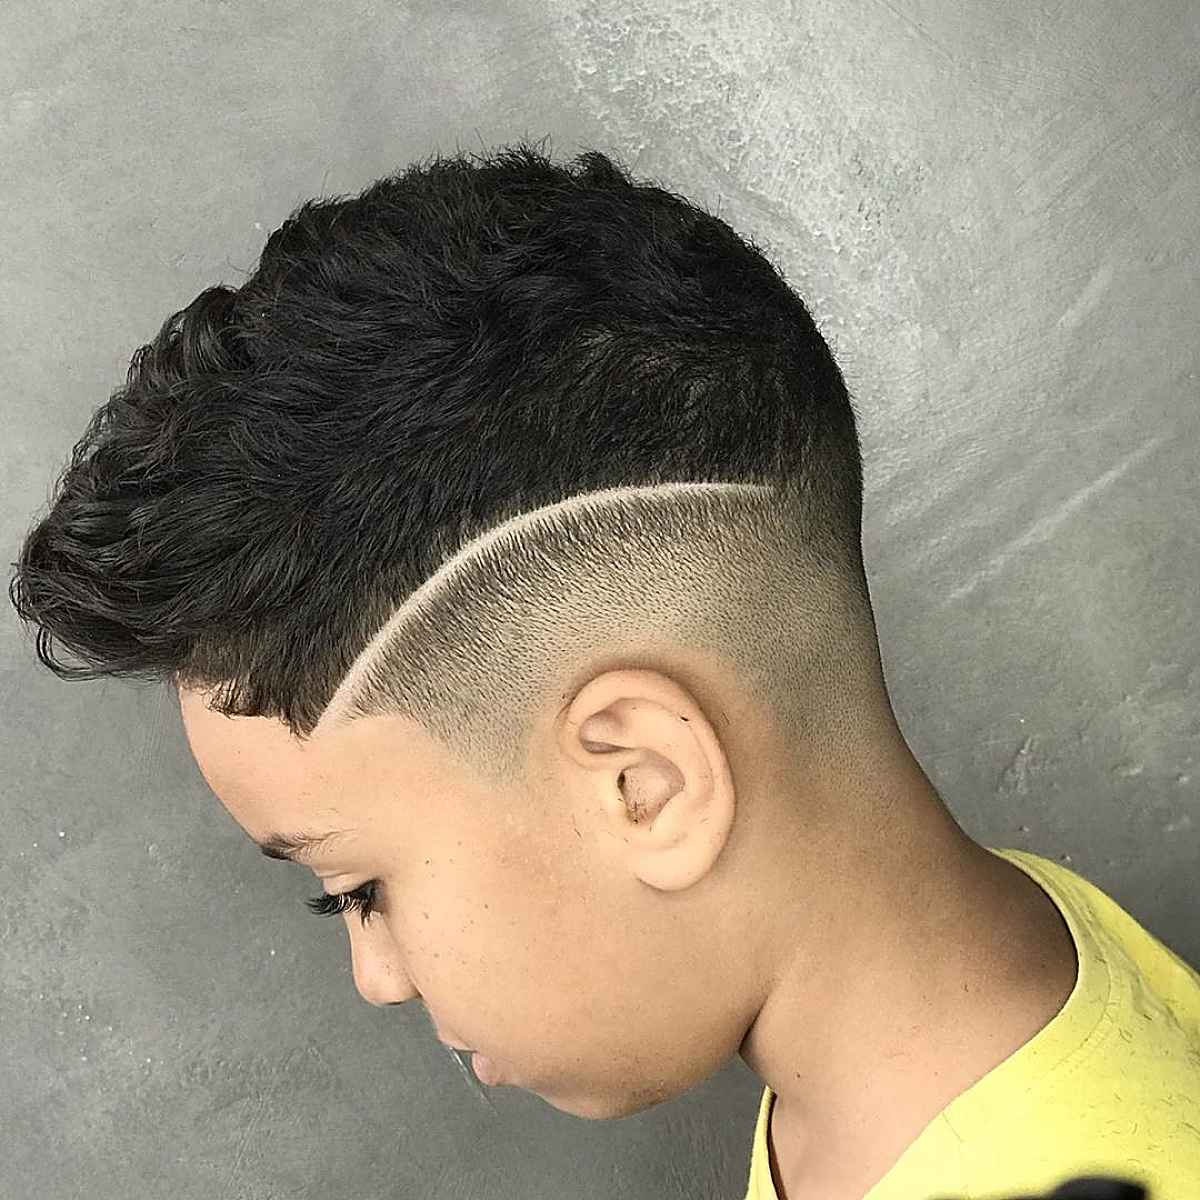 stylish faux hawk cut for a little boy